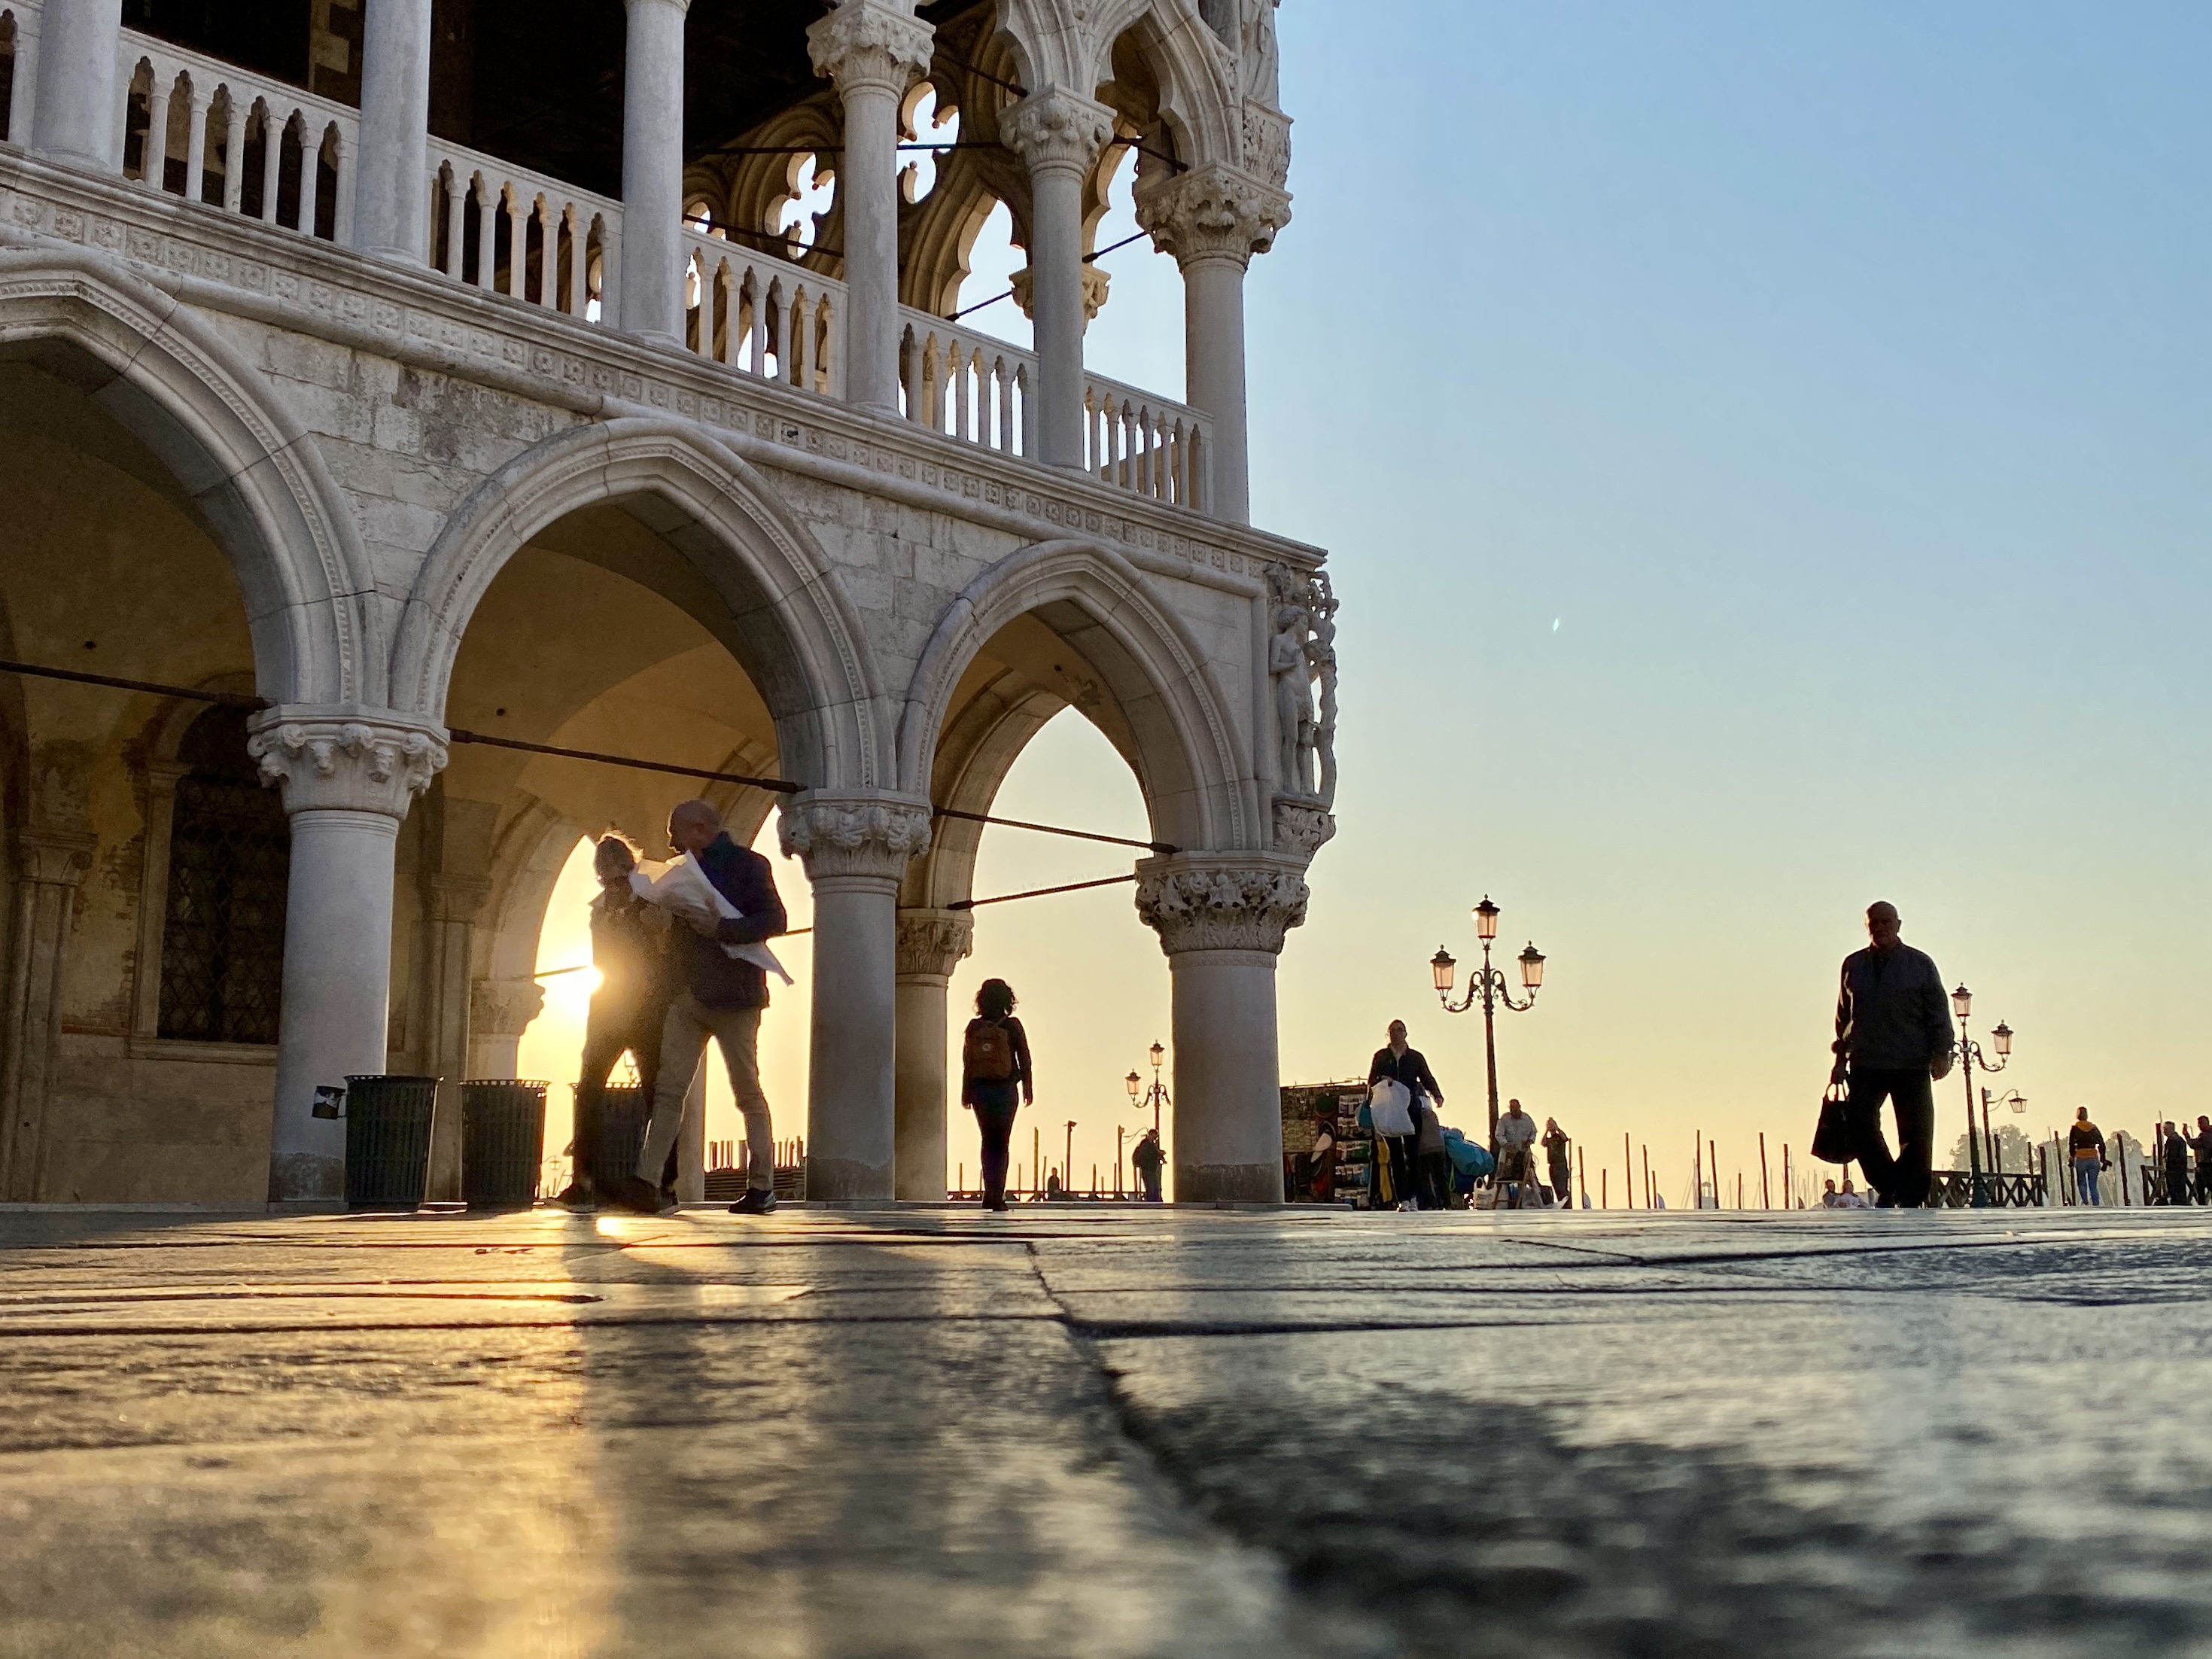 Morgens auf dem Markusplatz in Venedig, Licht fällt durch die Säulen des Dogenpalastes